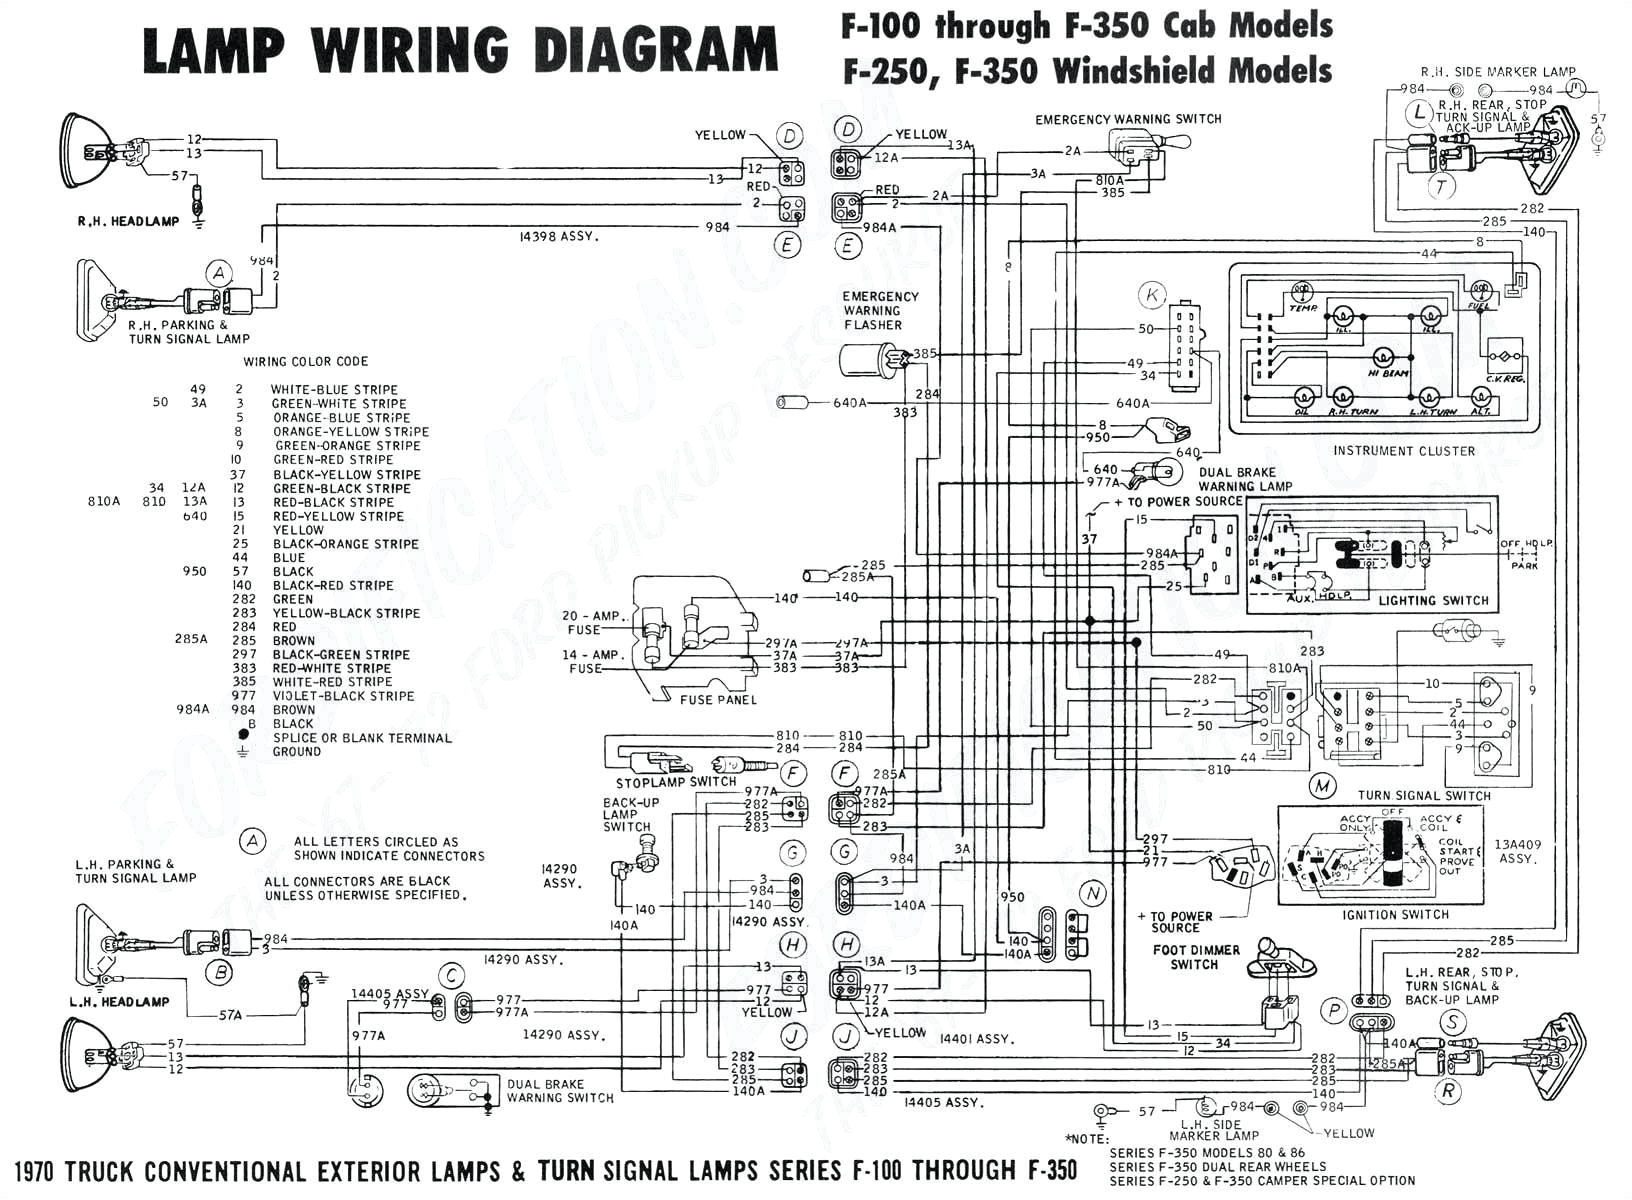 2005 ford f150 trailer wiring diagram wiring diagram ford trailer plug fresh f150 trailer wiring diagram download 7l jpg